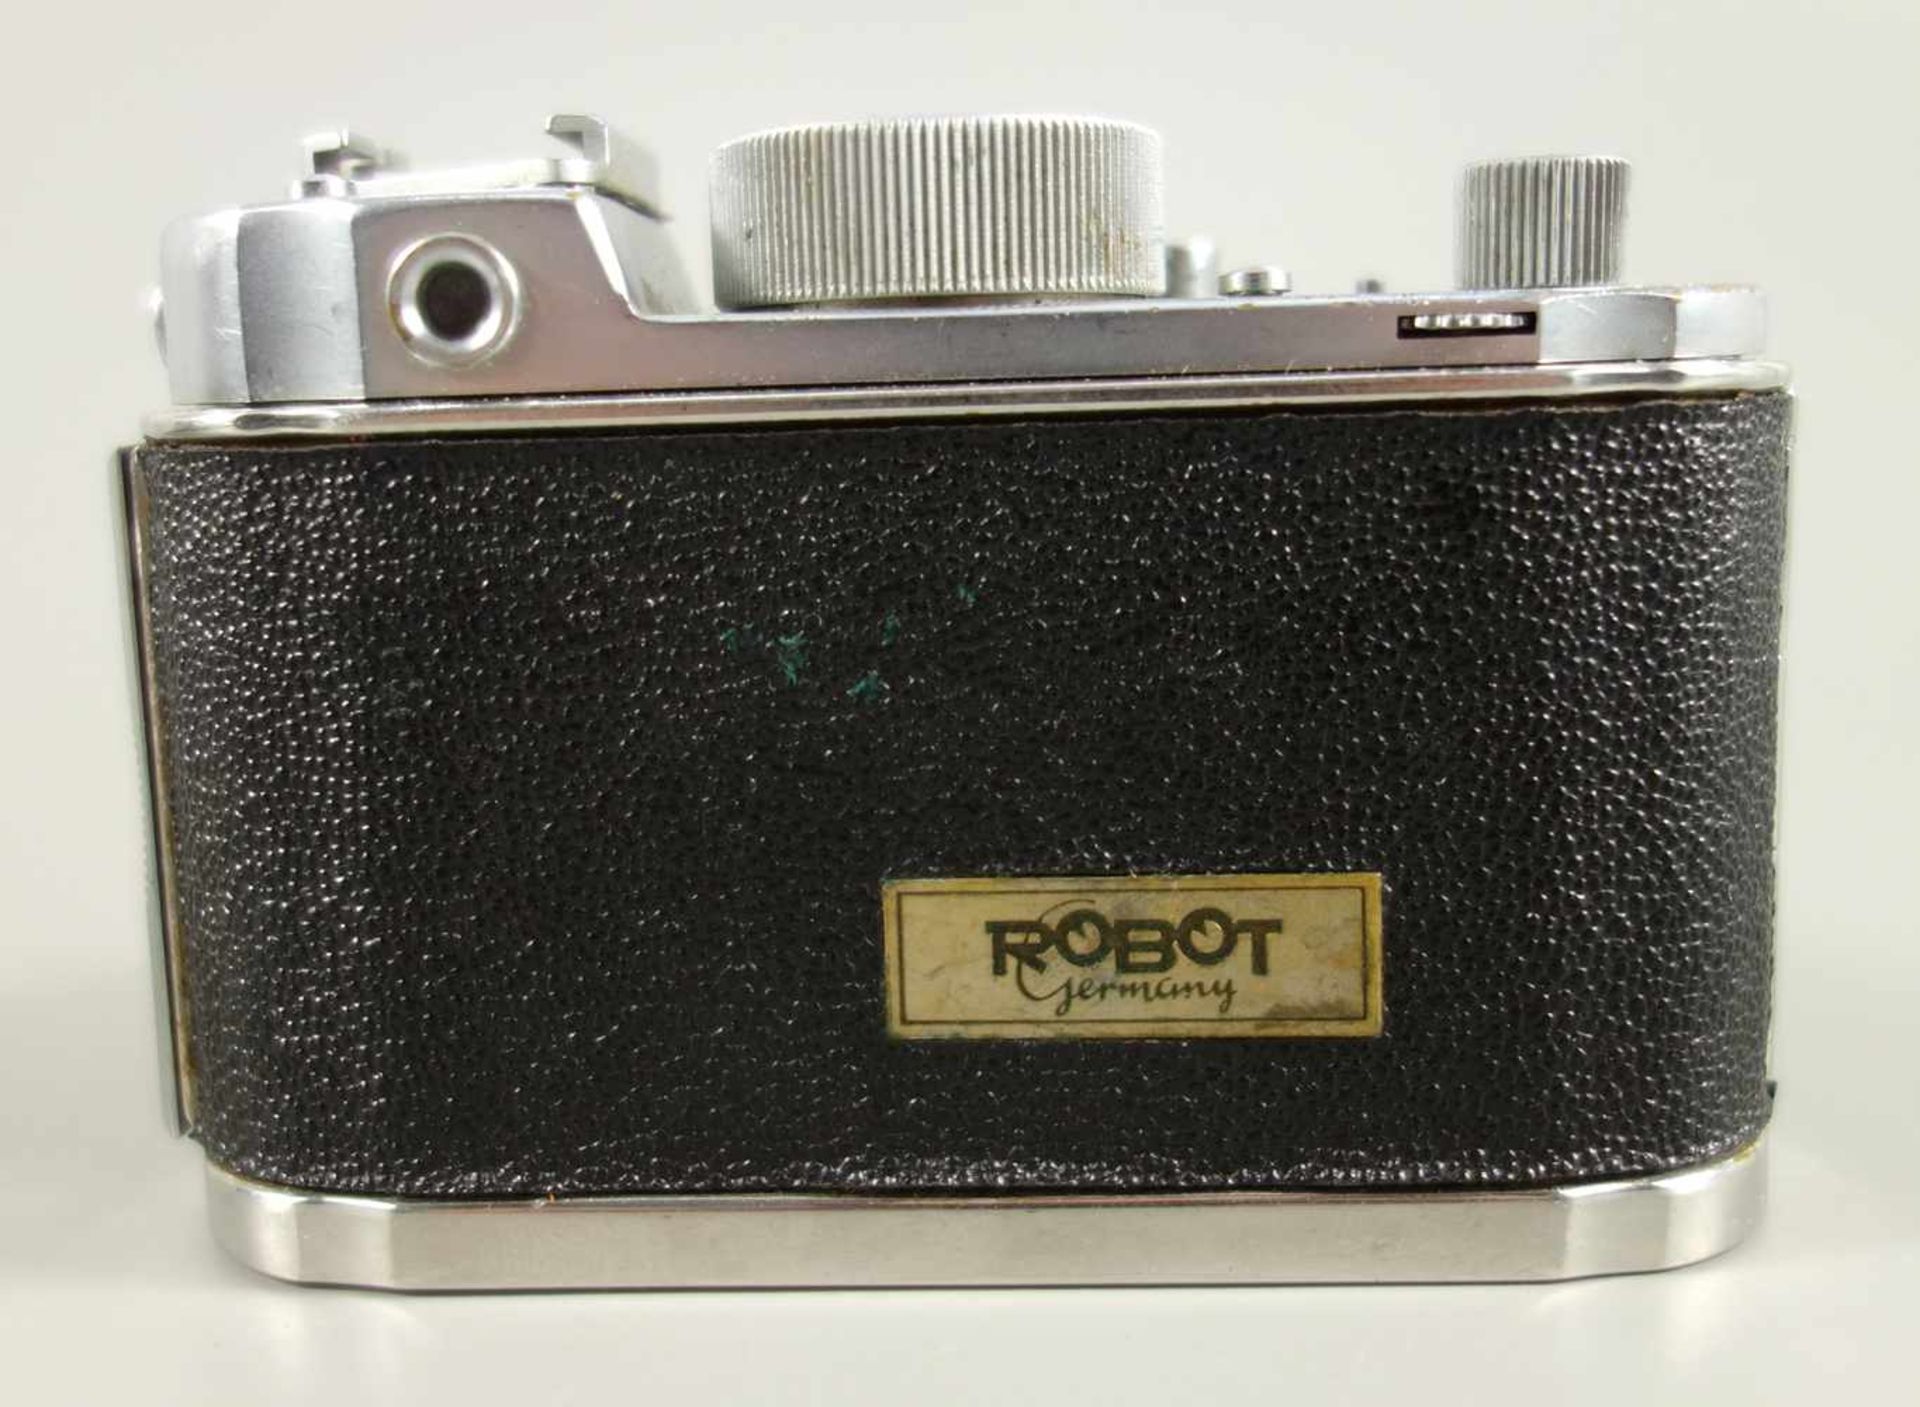 Kleinbildkamera Robot IIa, (Negativformat: 24 x 24 mm), Otto Berning&Co., Düsseldorf von 1951 bis - Bild 2 aus 4